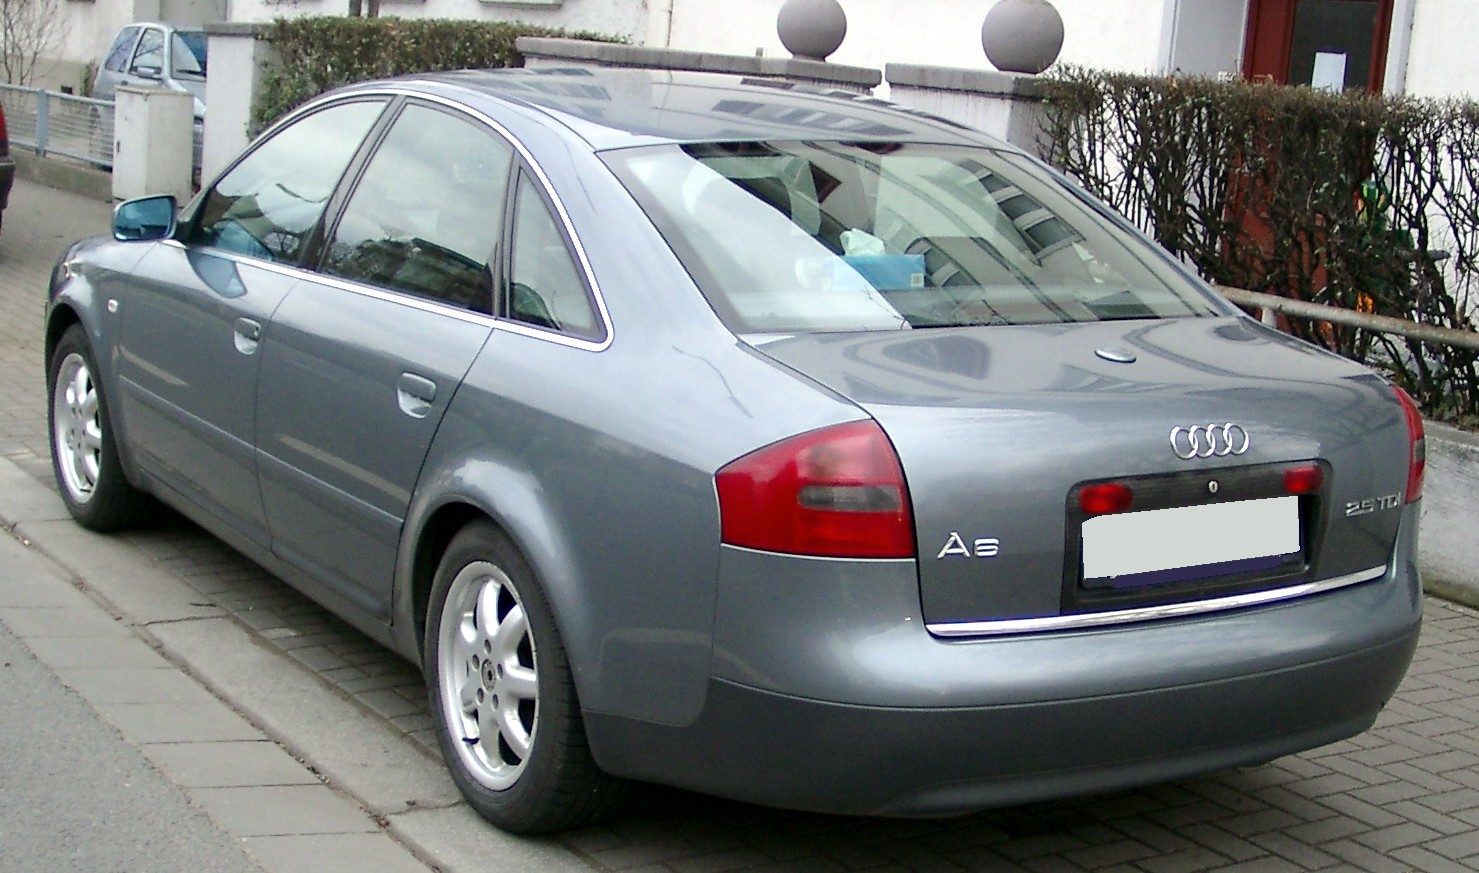 Audi_A6_C5_rear_20080121.jpg